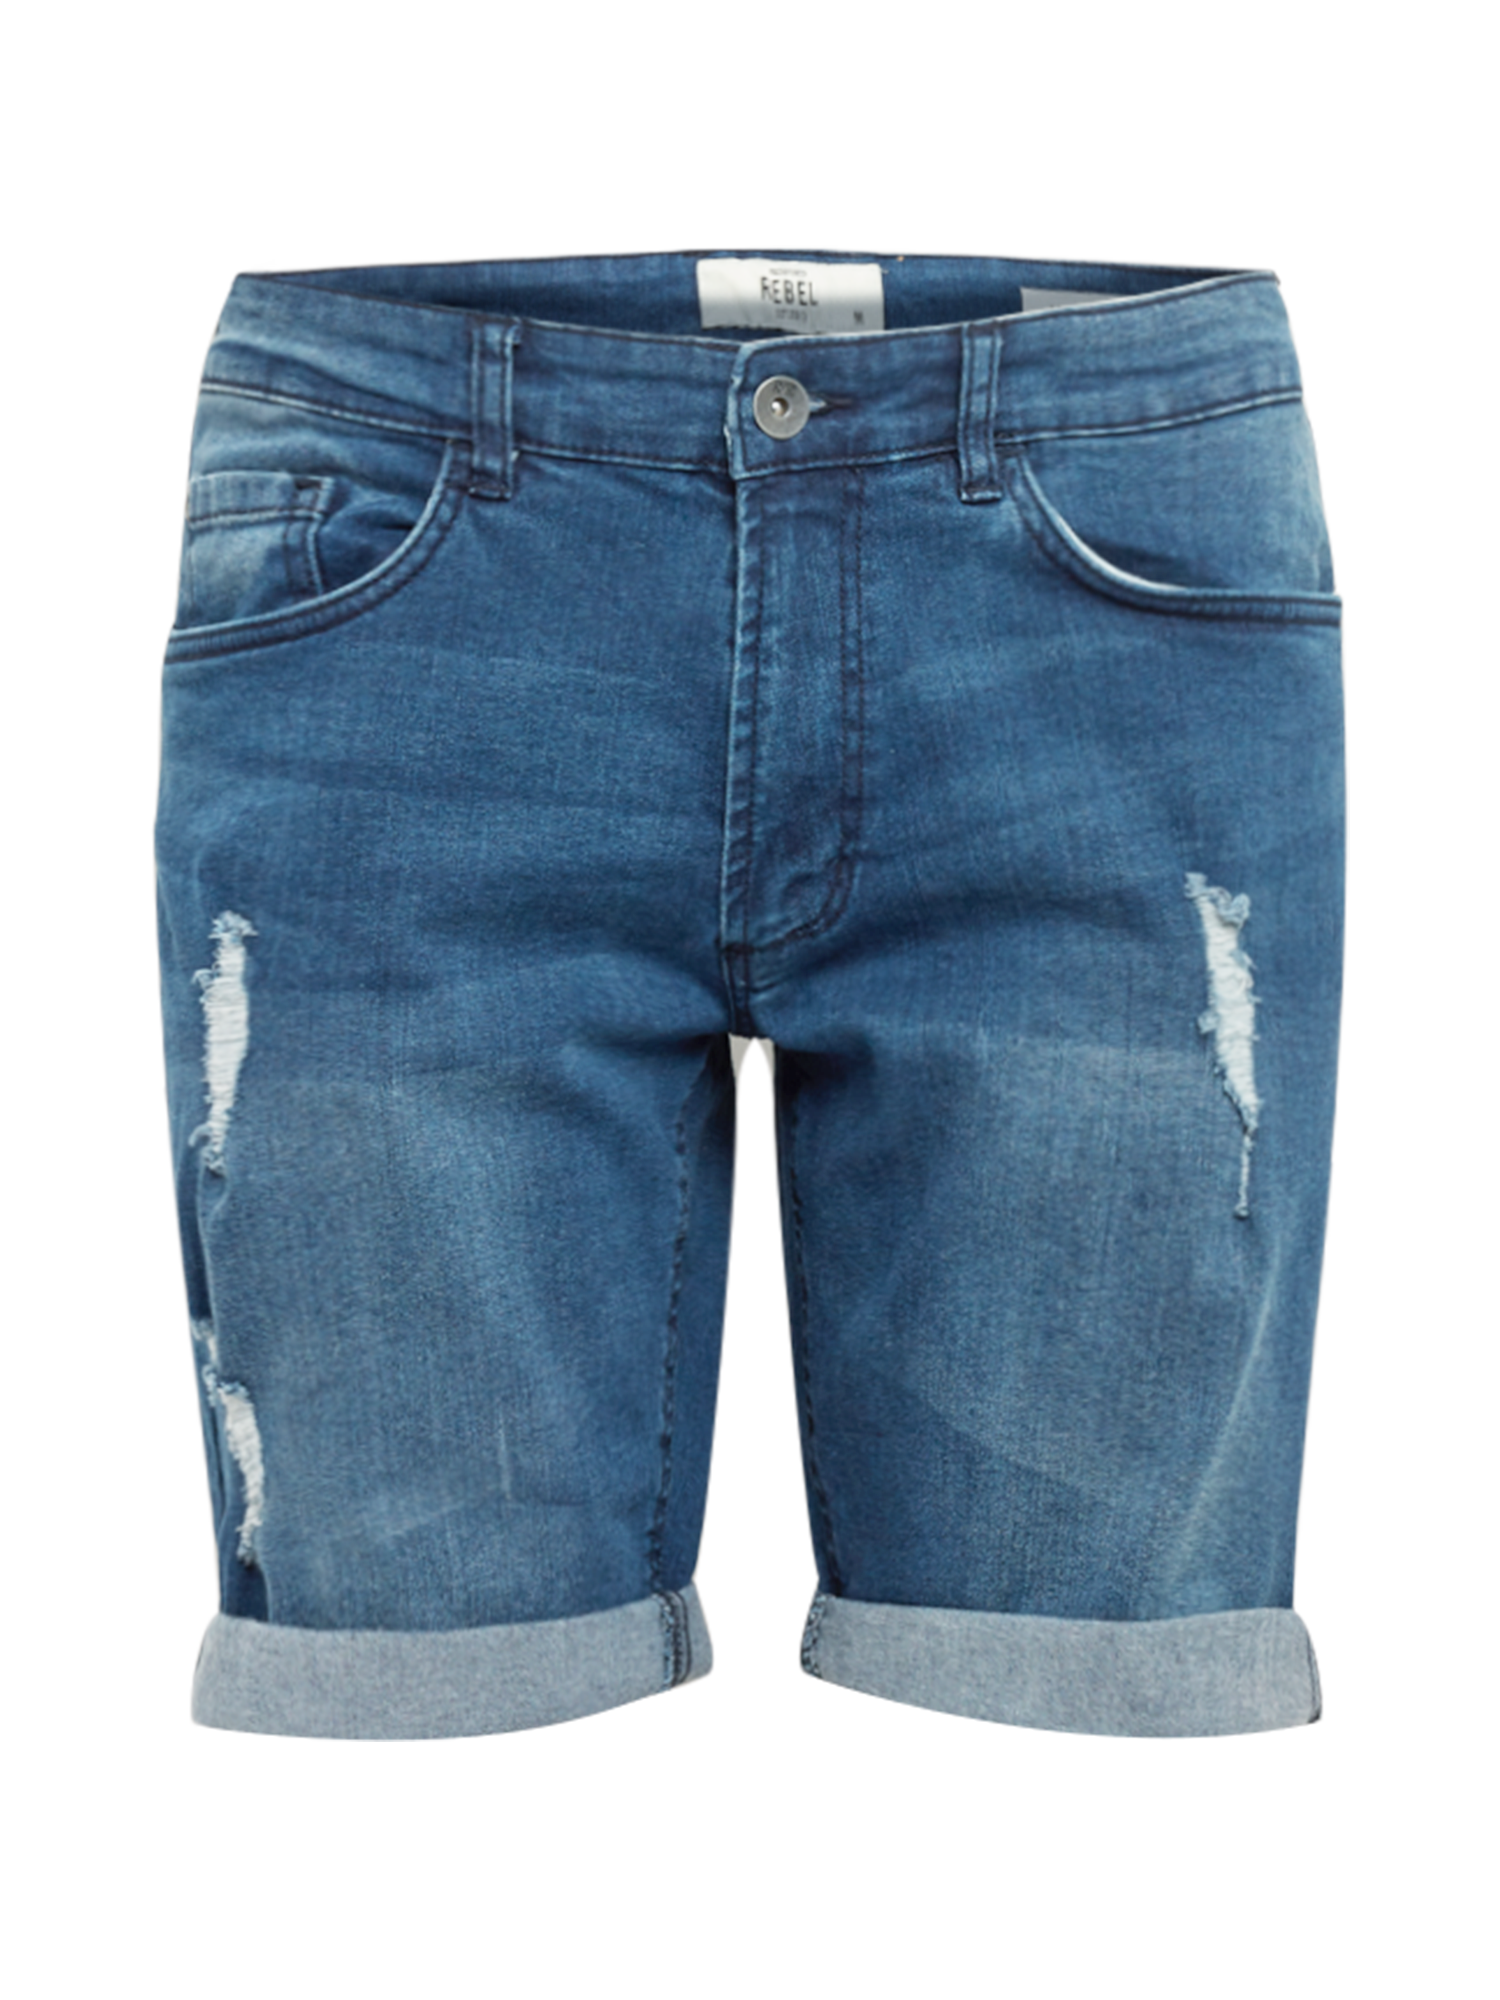 Abbigliamento Uomo Redefined Rebel Jeans Oslo in Blu 